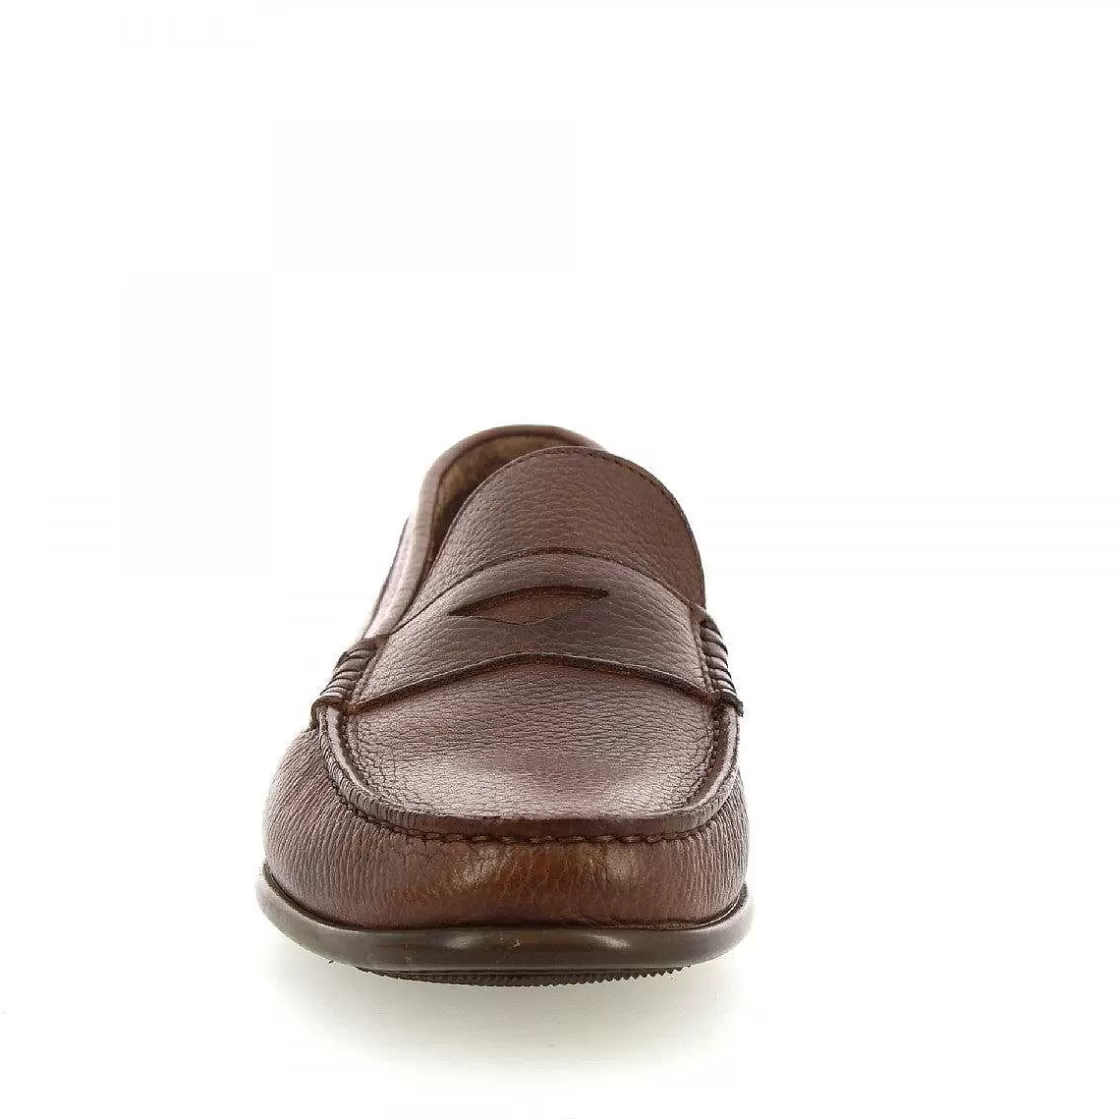 Leonardo Elegant Slip-On Loafers For Men Handmade In Dark Brown Leather Calfskin Cheap